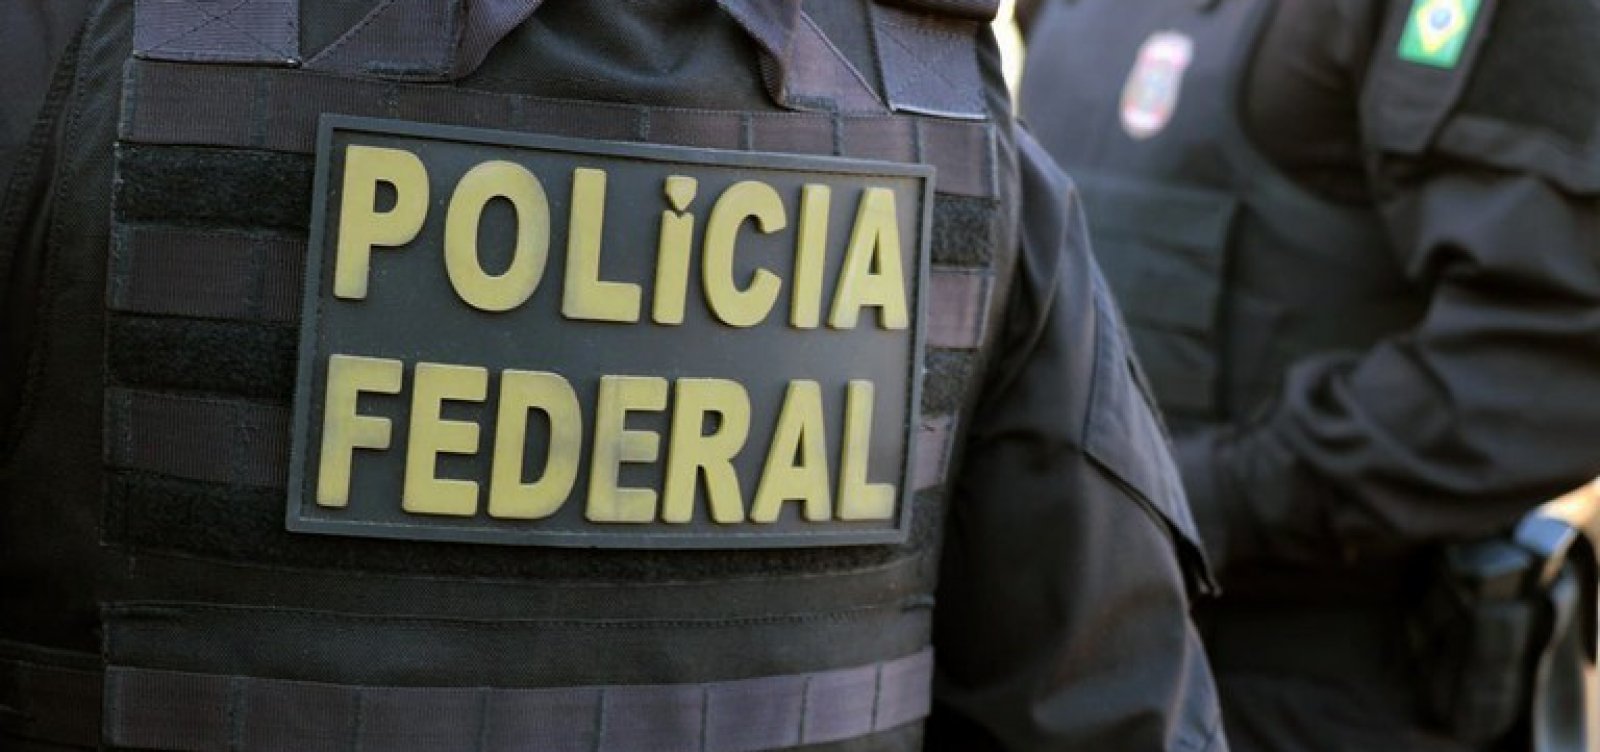 Polícia Federal identifica responsável por vazamento de prova do Enem 